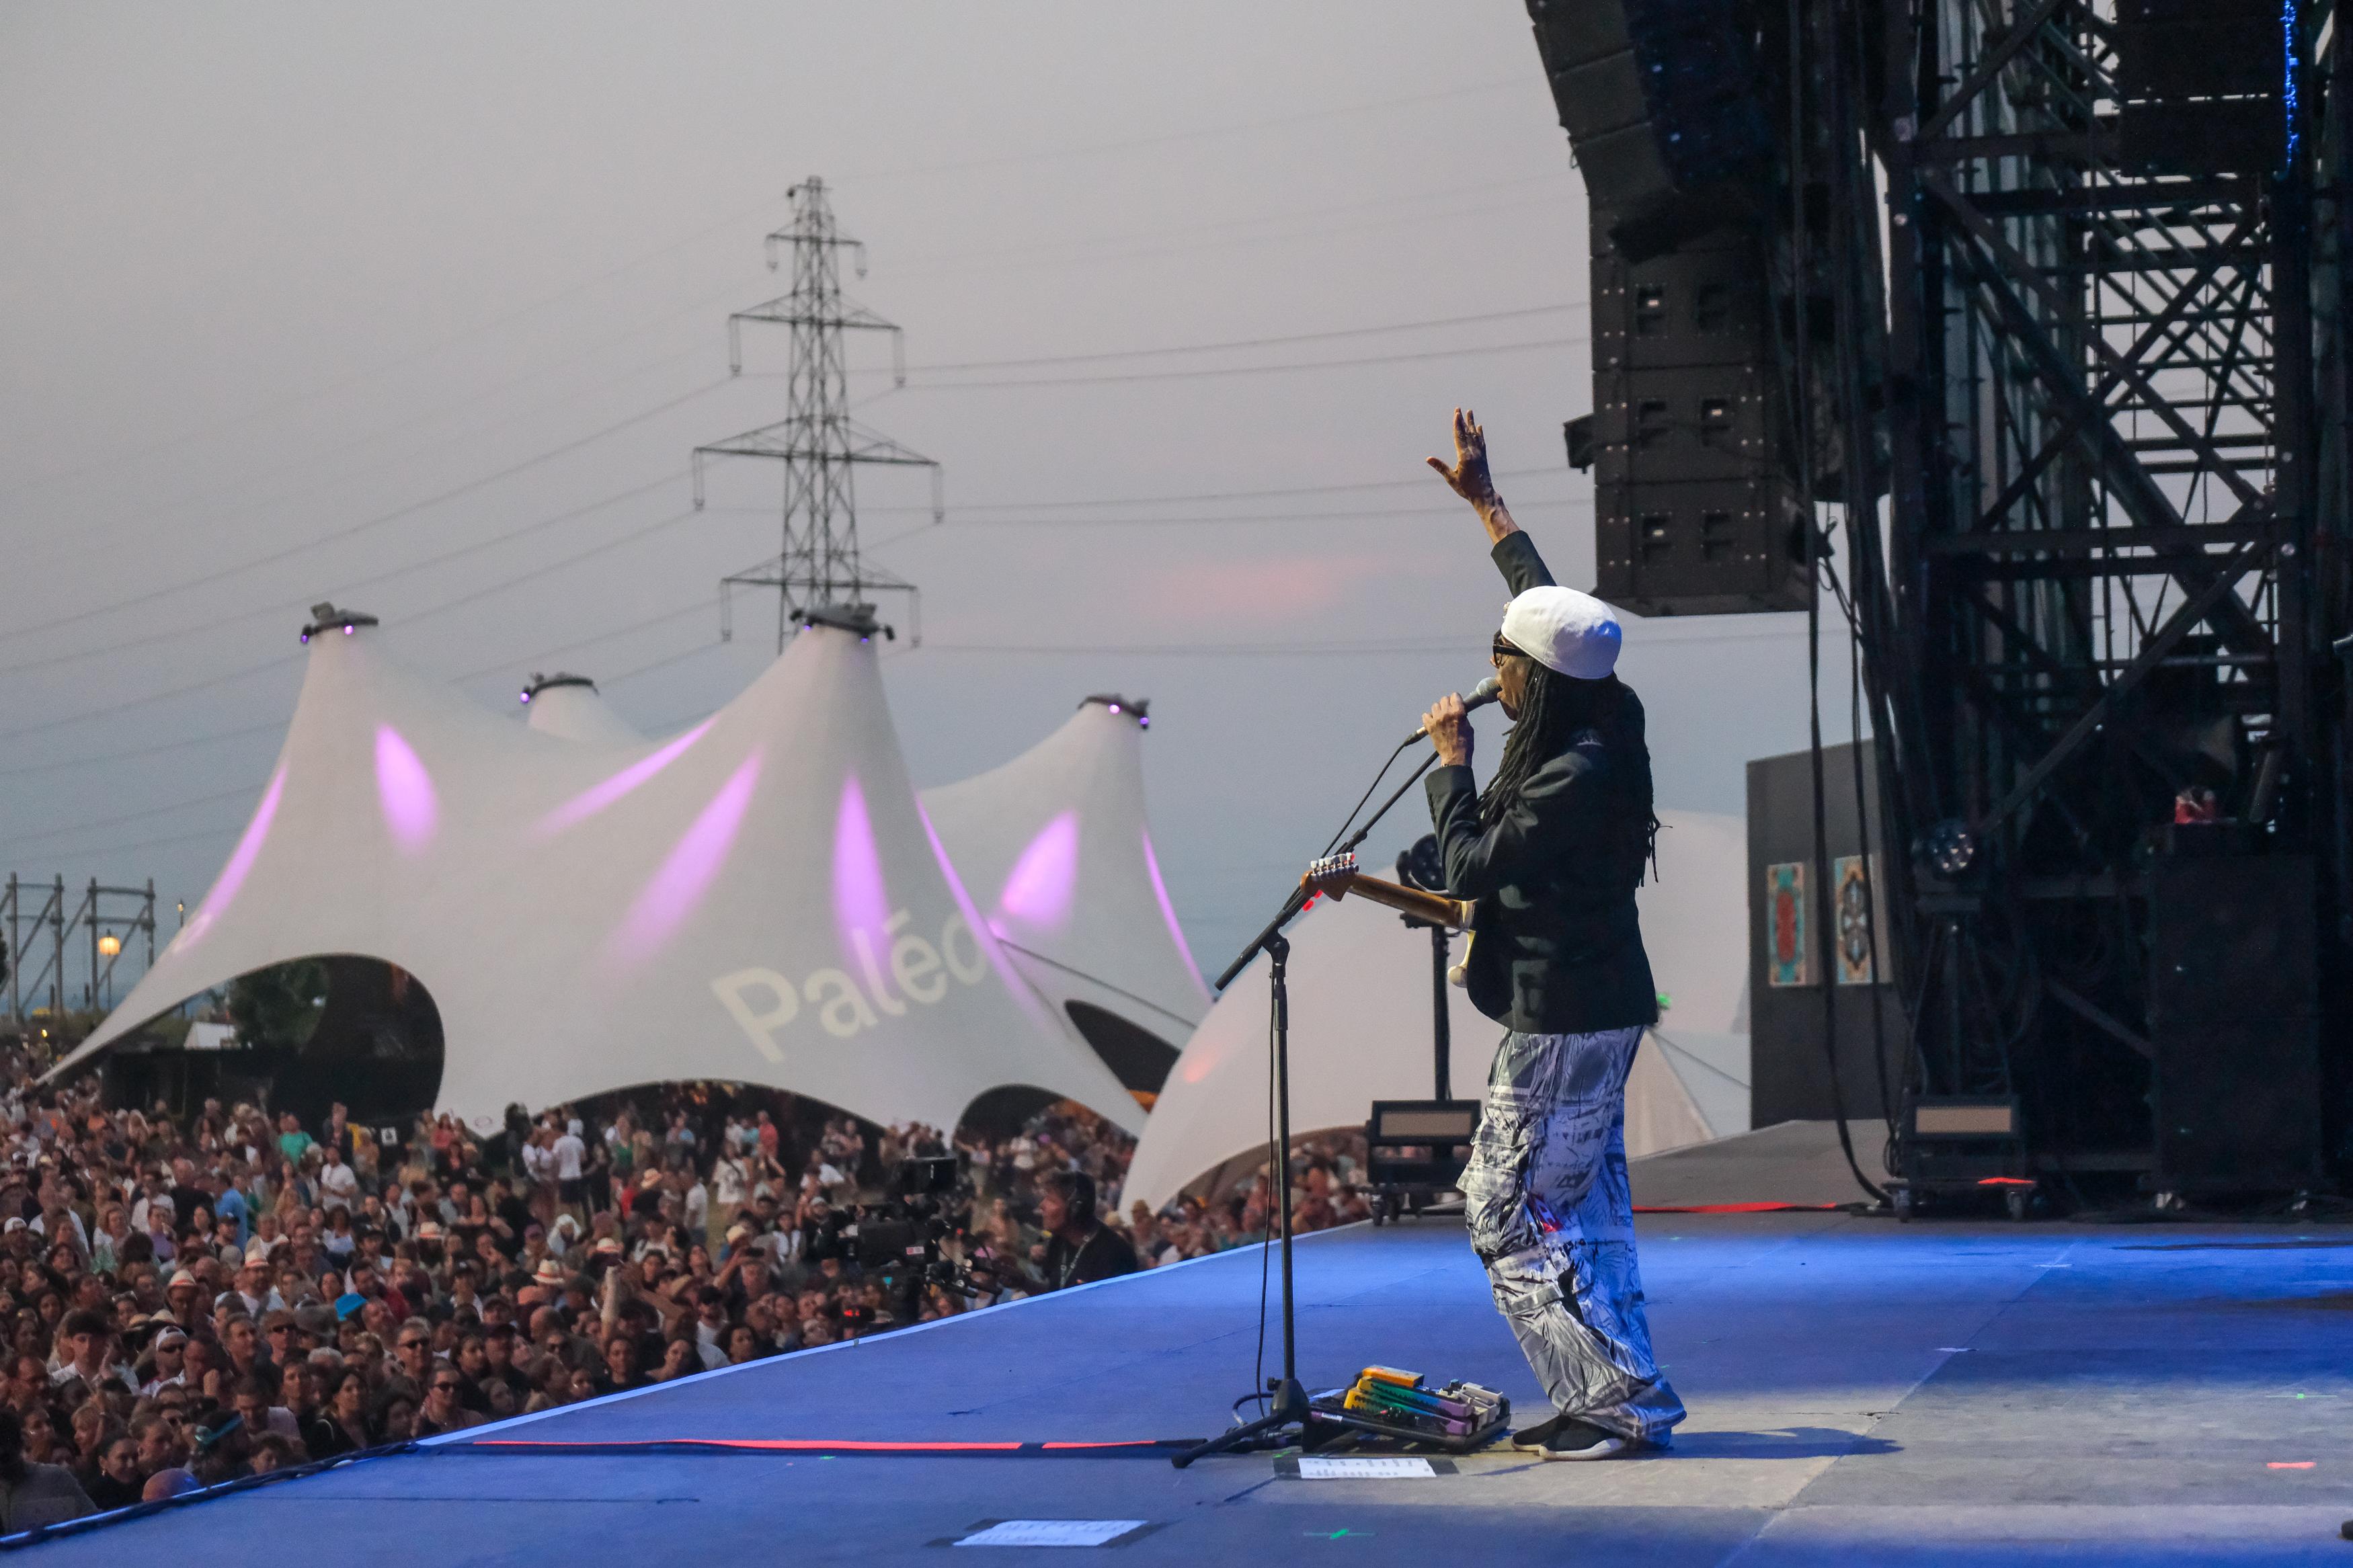 Nile Rogers sur la Grande scène de Paléo avec son groupe Chic mercredi soir. [Paléo Festival / loOrent.com]